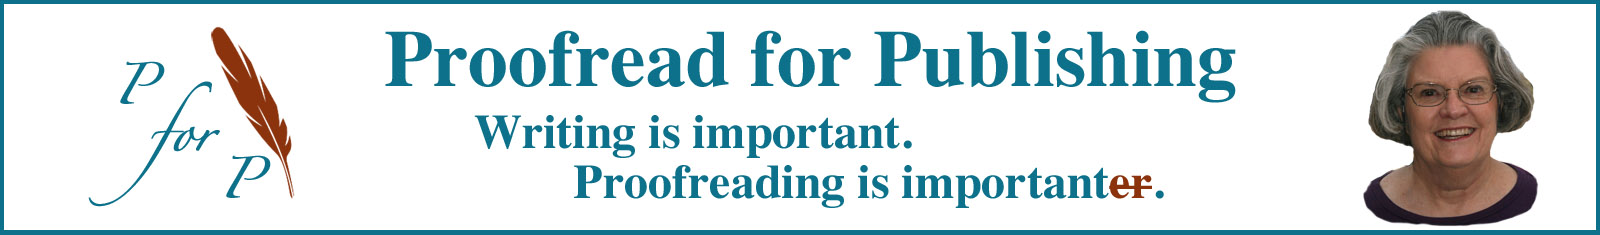 Proofread 4 Publishing